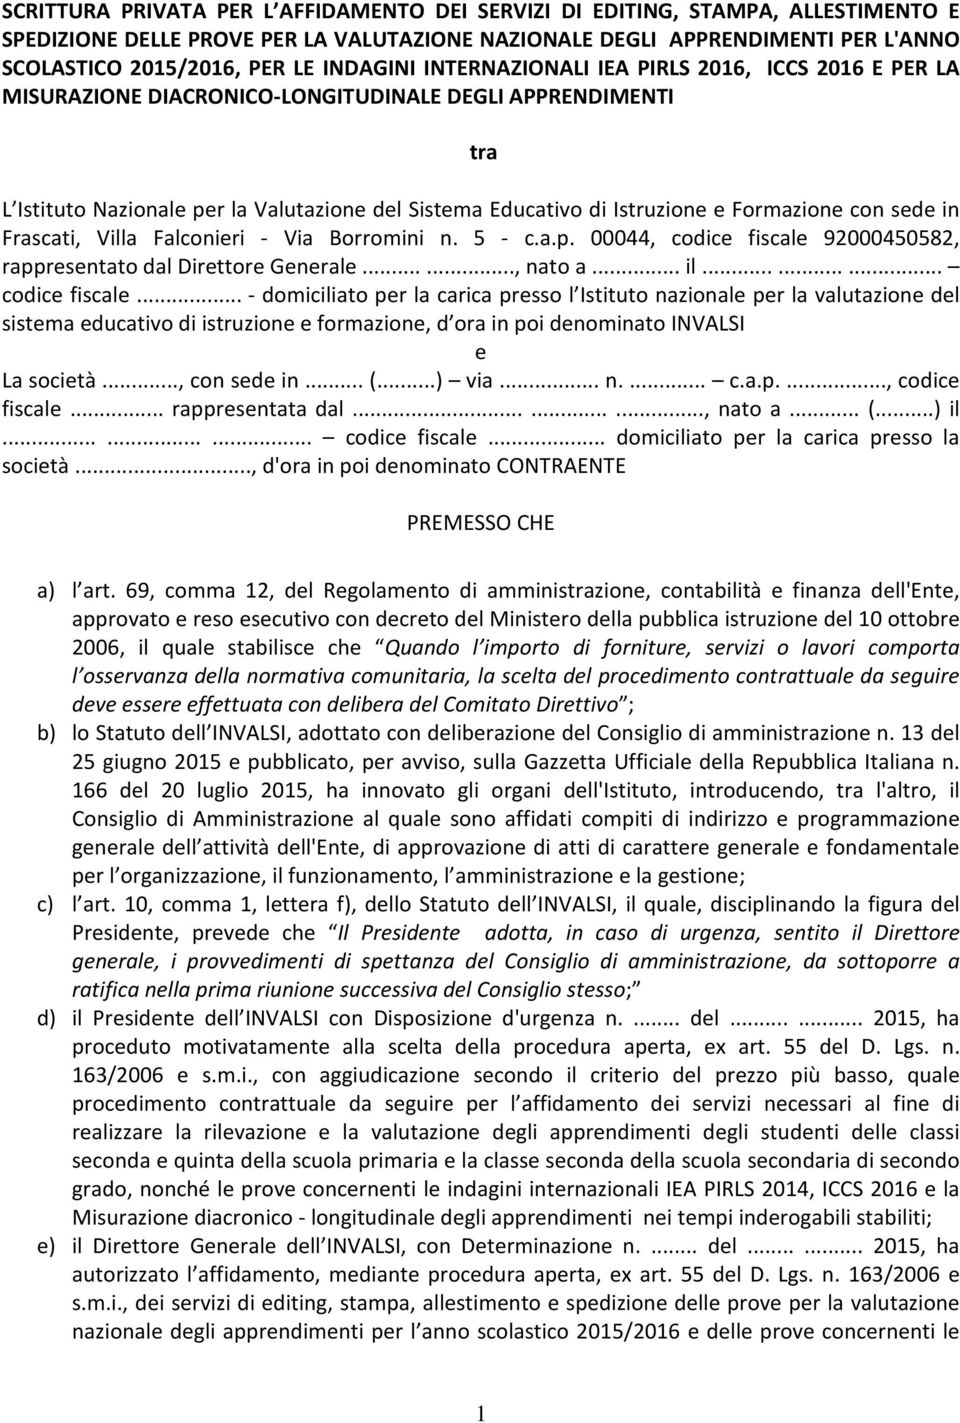 Formazione con sede in Frascati, Villa Falconieri - Via Borromini n. 5 - c.a.p. 00044, codice fiscale 